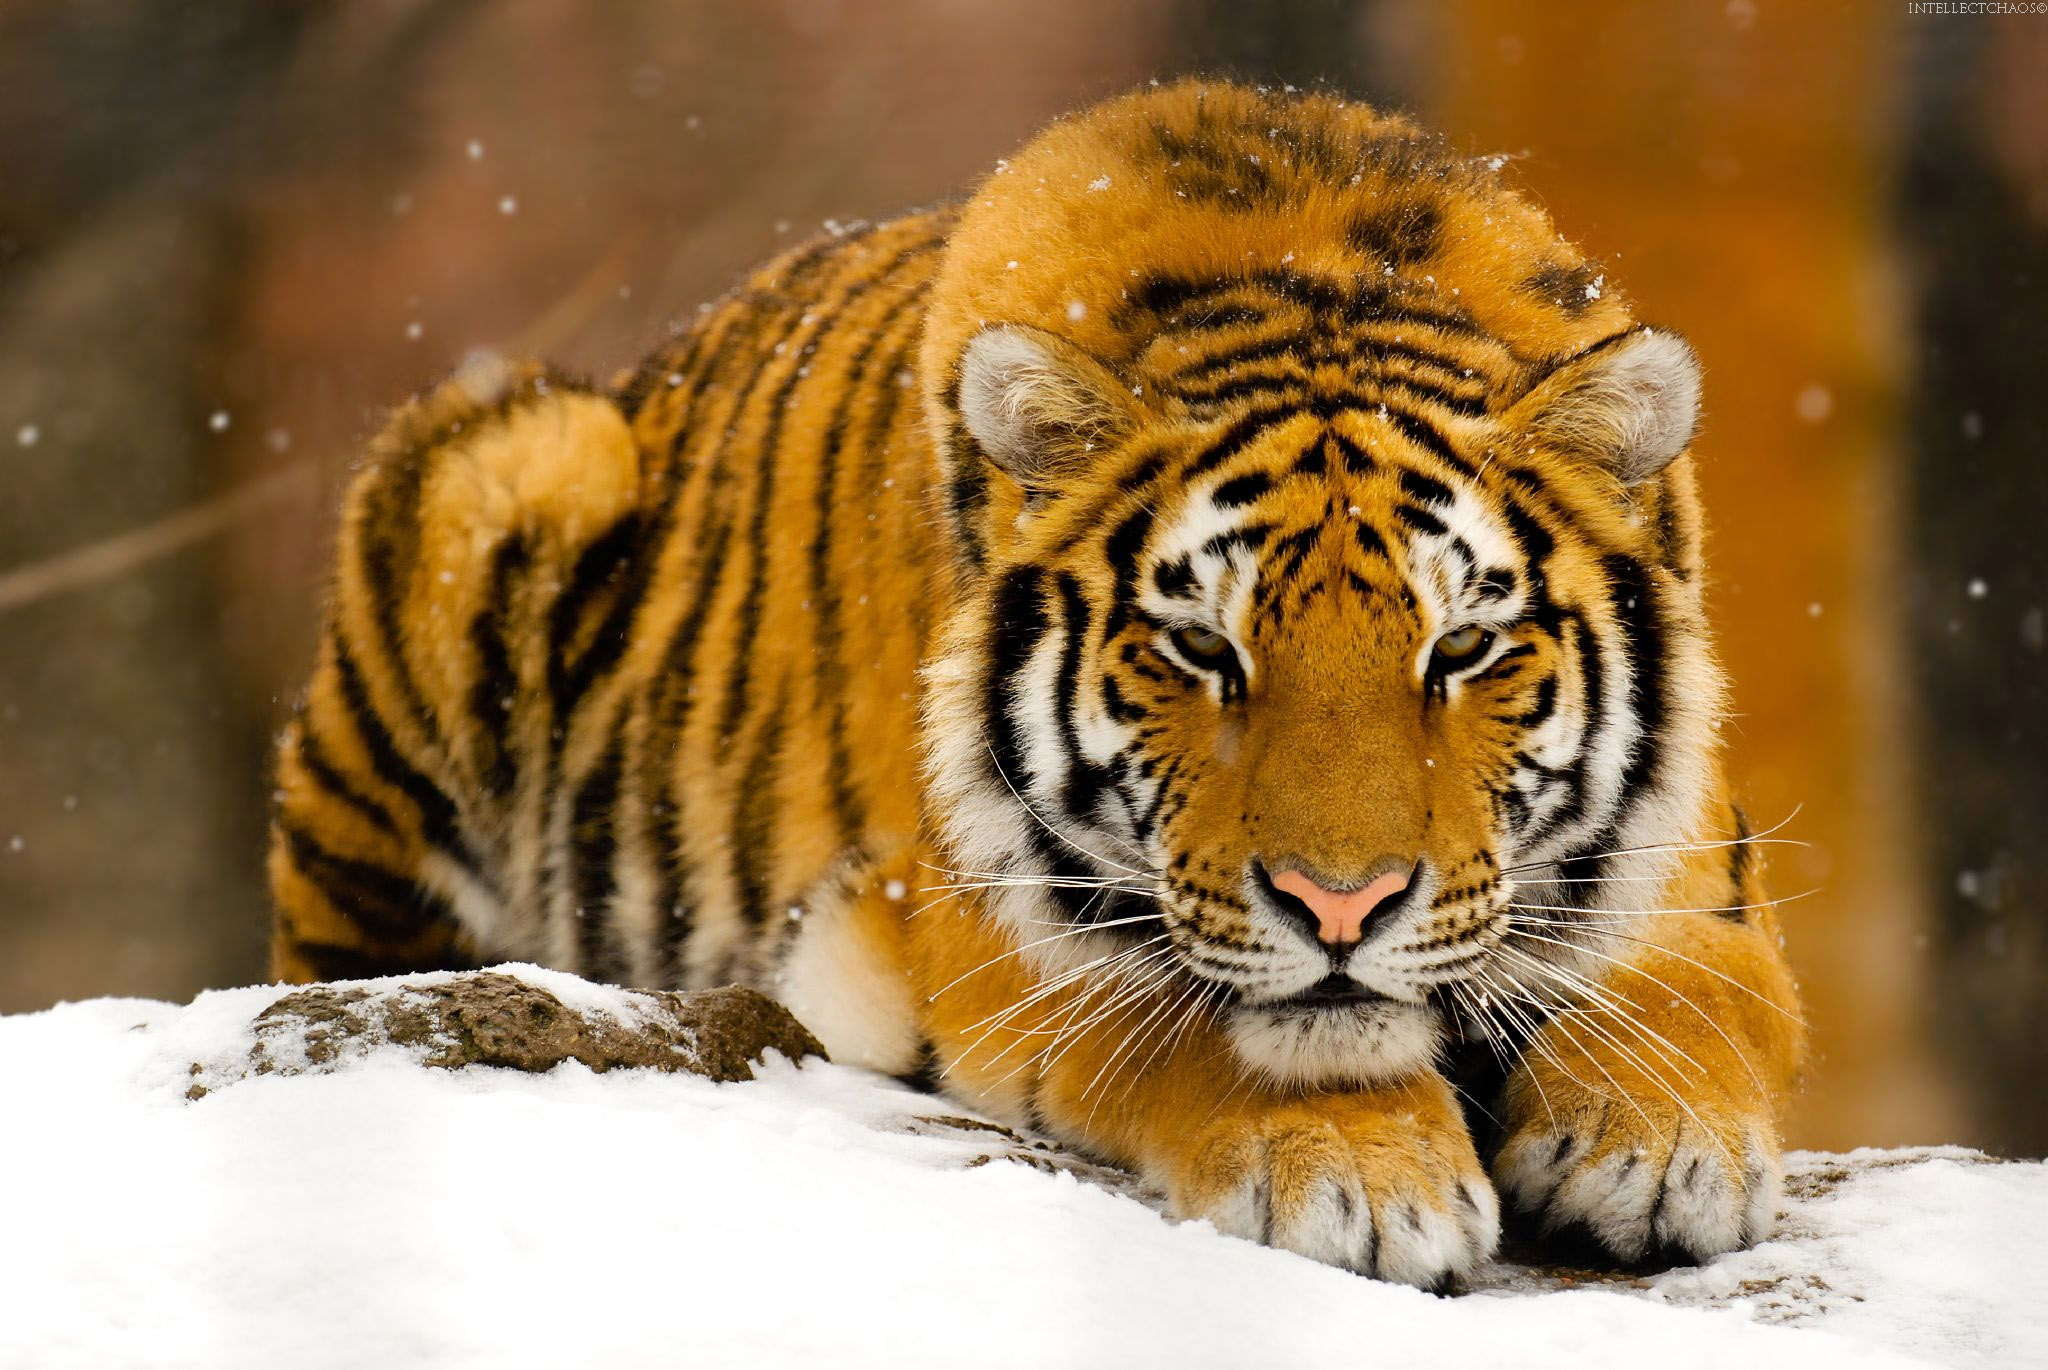 Tigers - 02 - 11.jpg